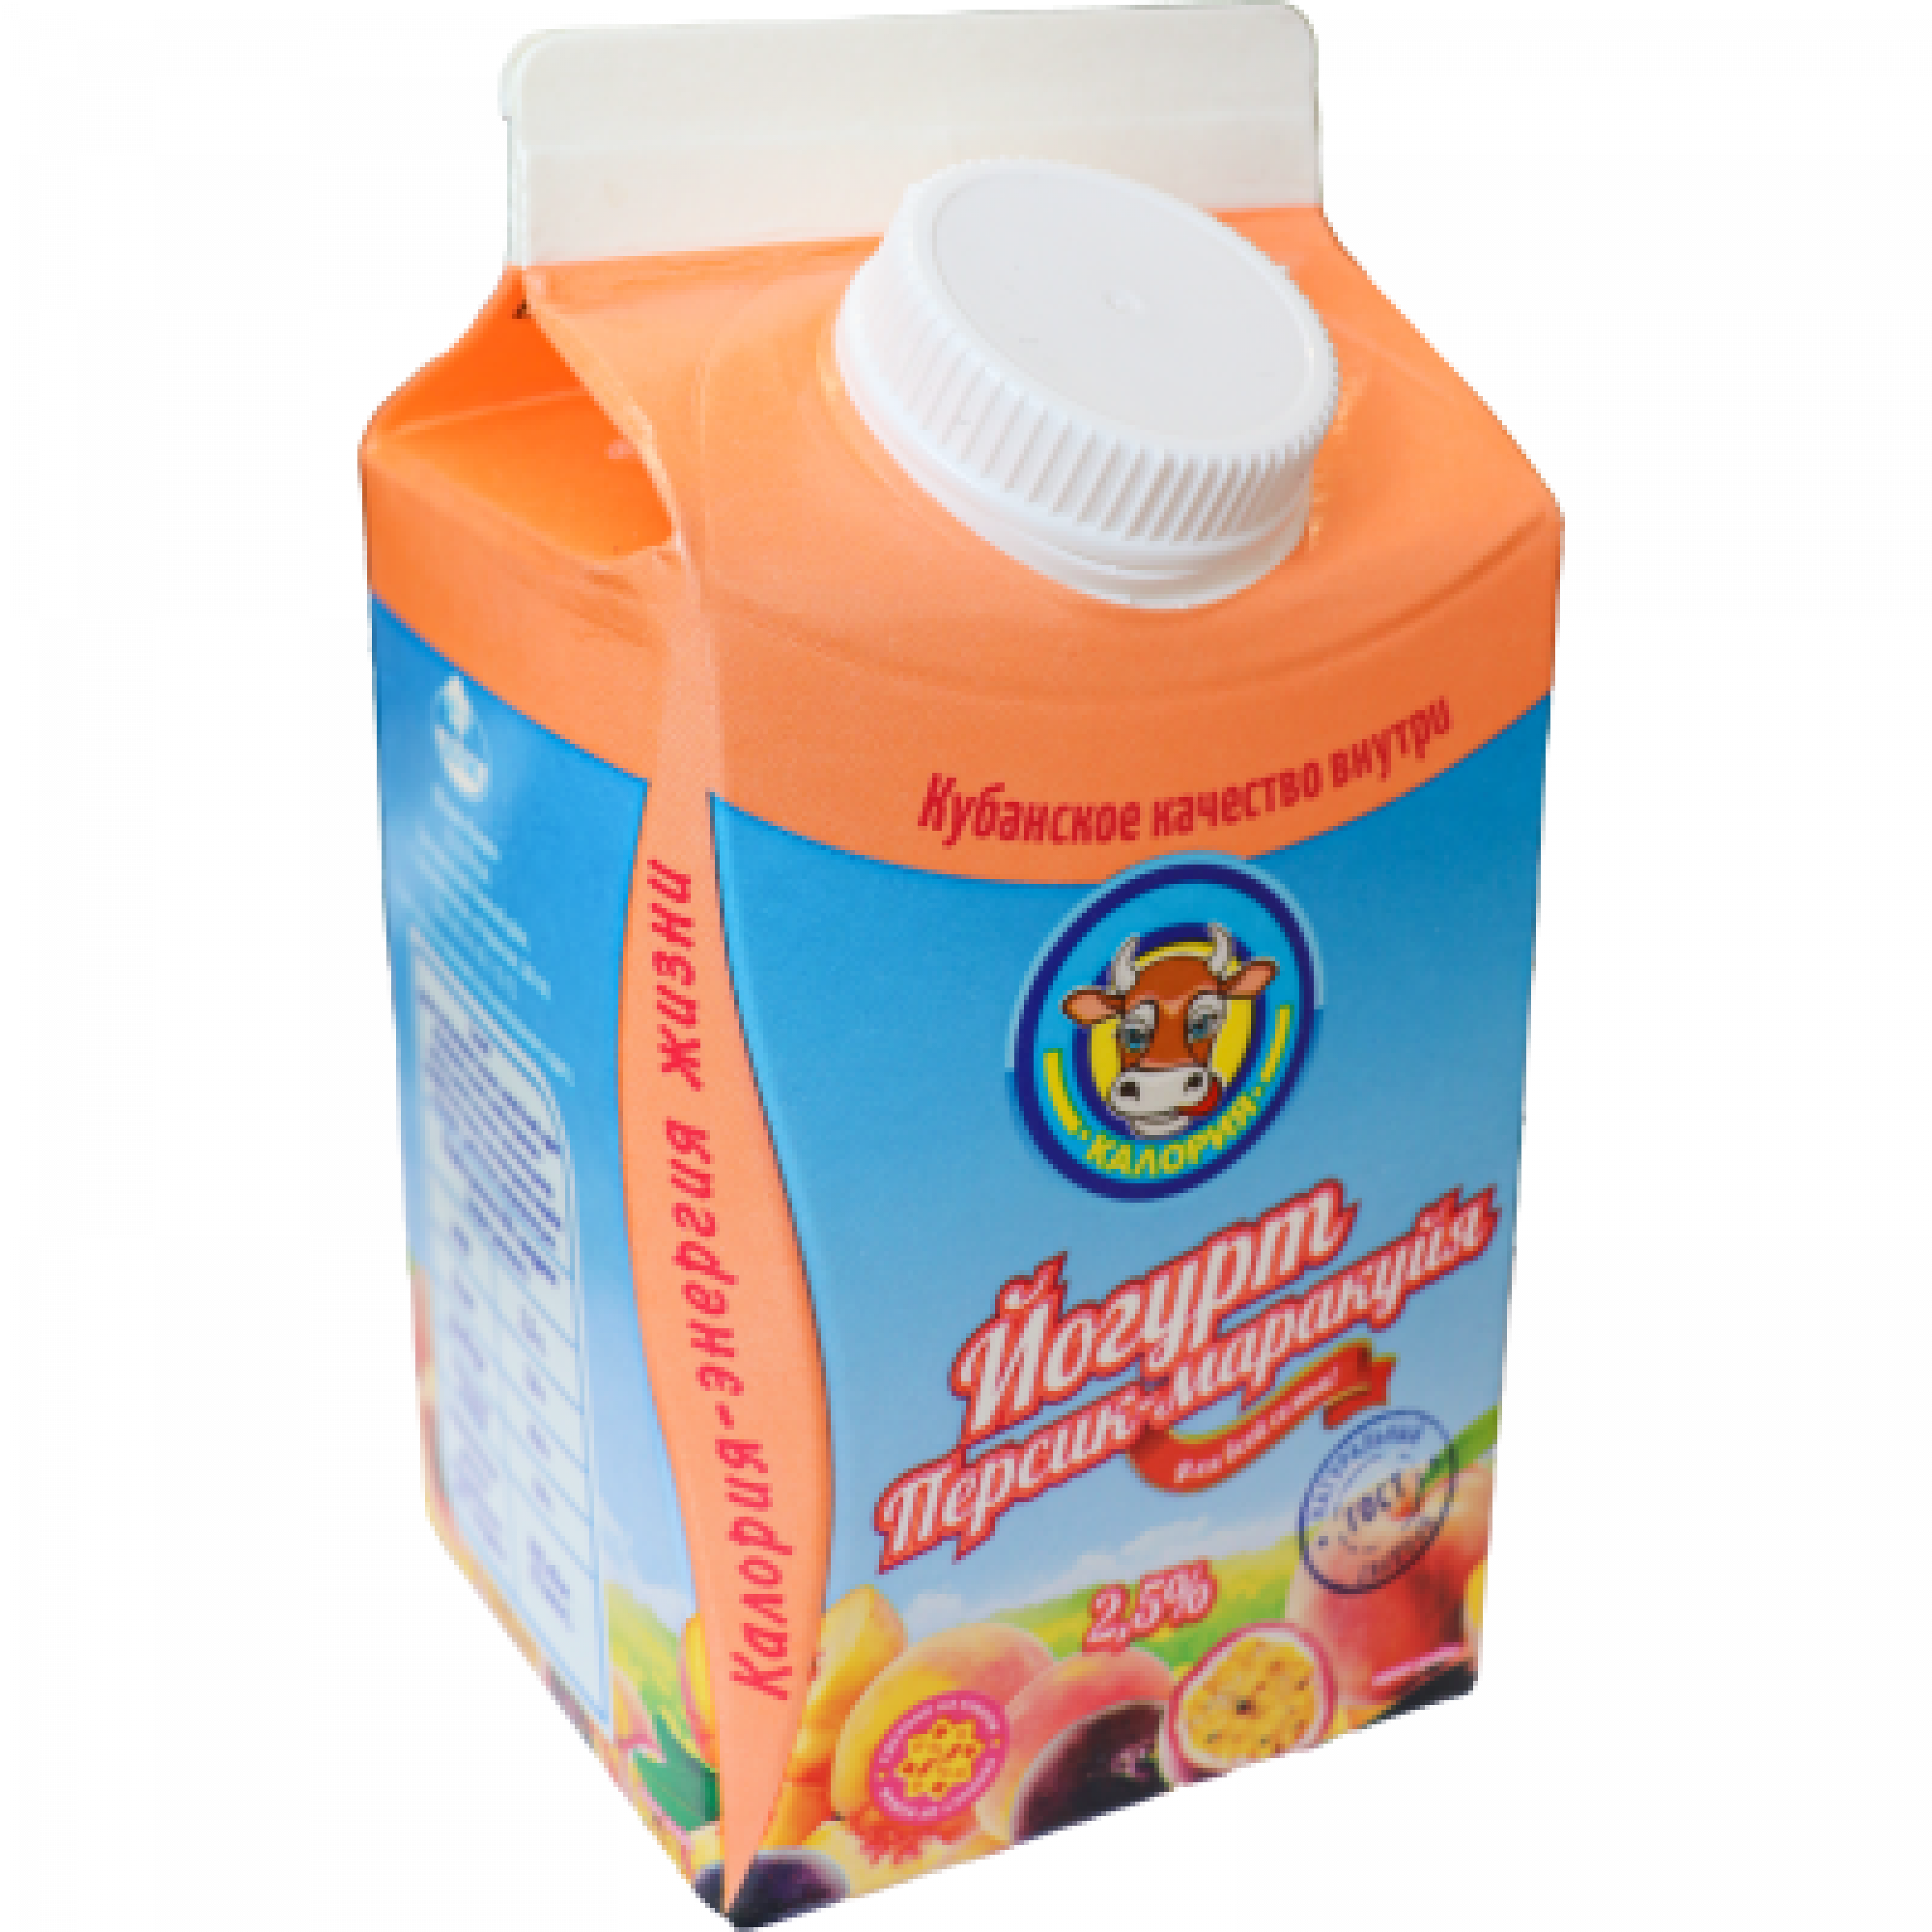 Йогурт питьевой с ароматом персика-маракуйи Калория 2,5%, 450 г